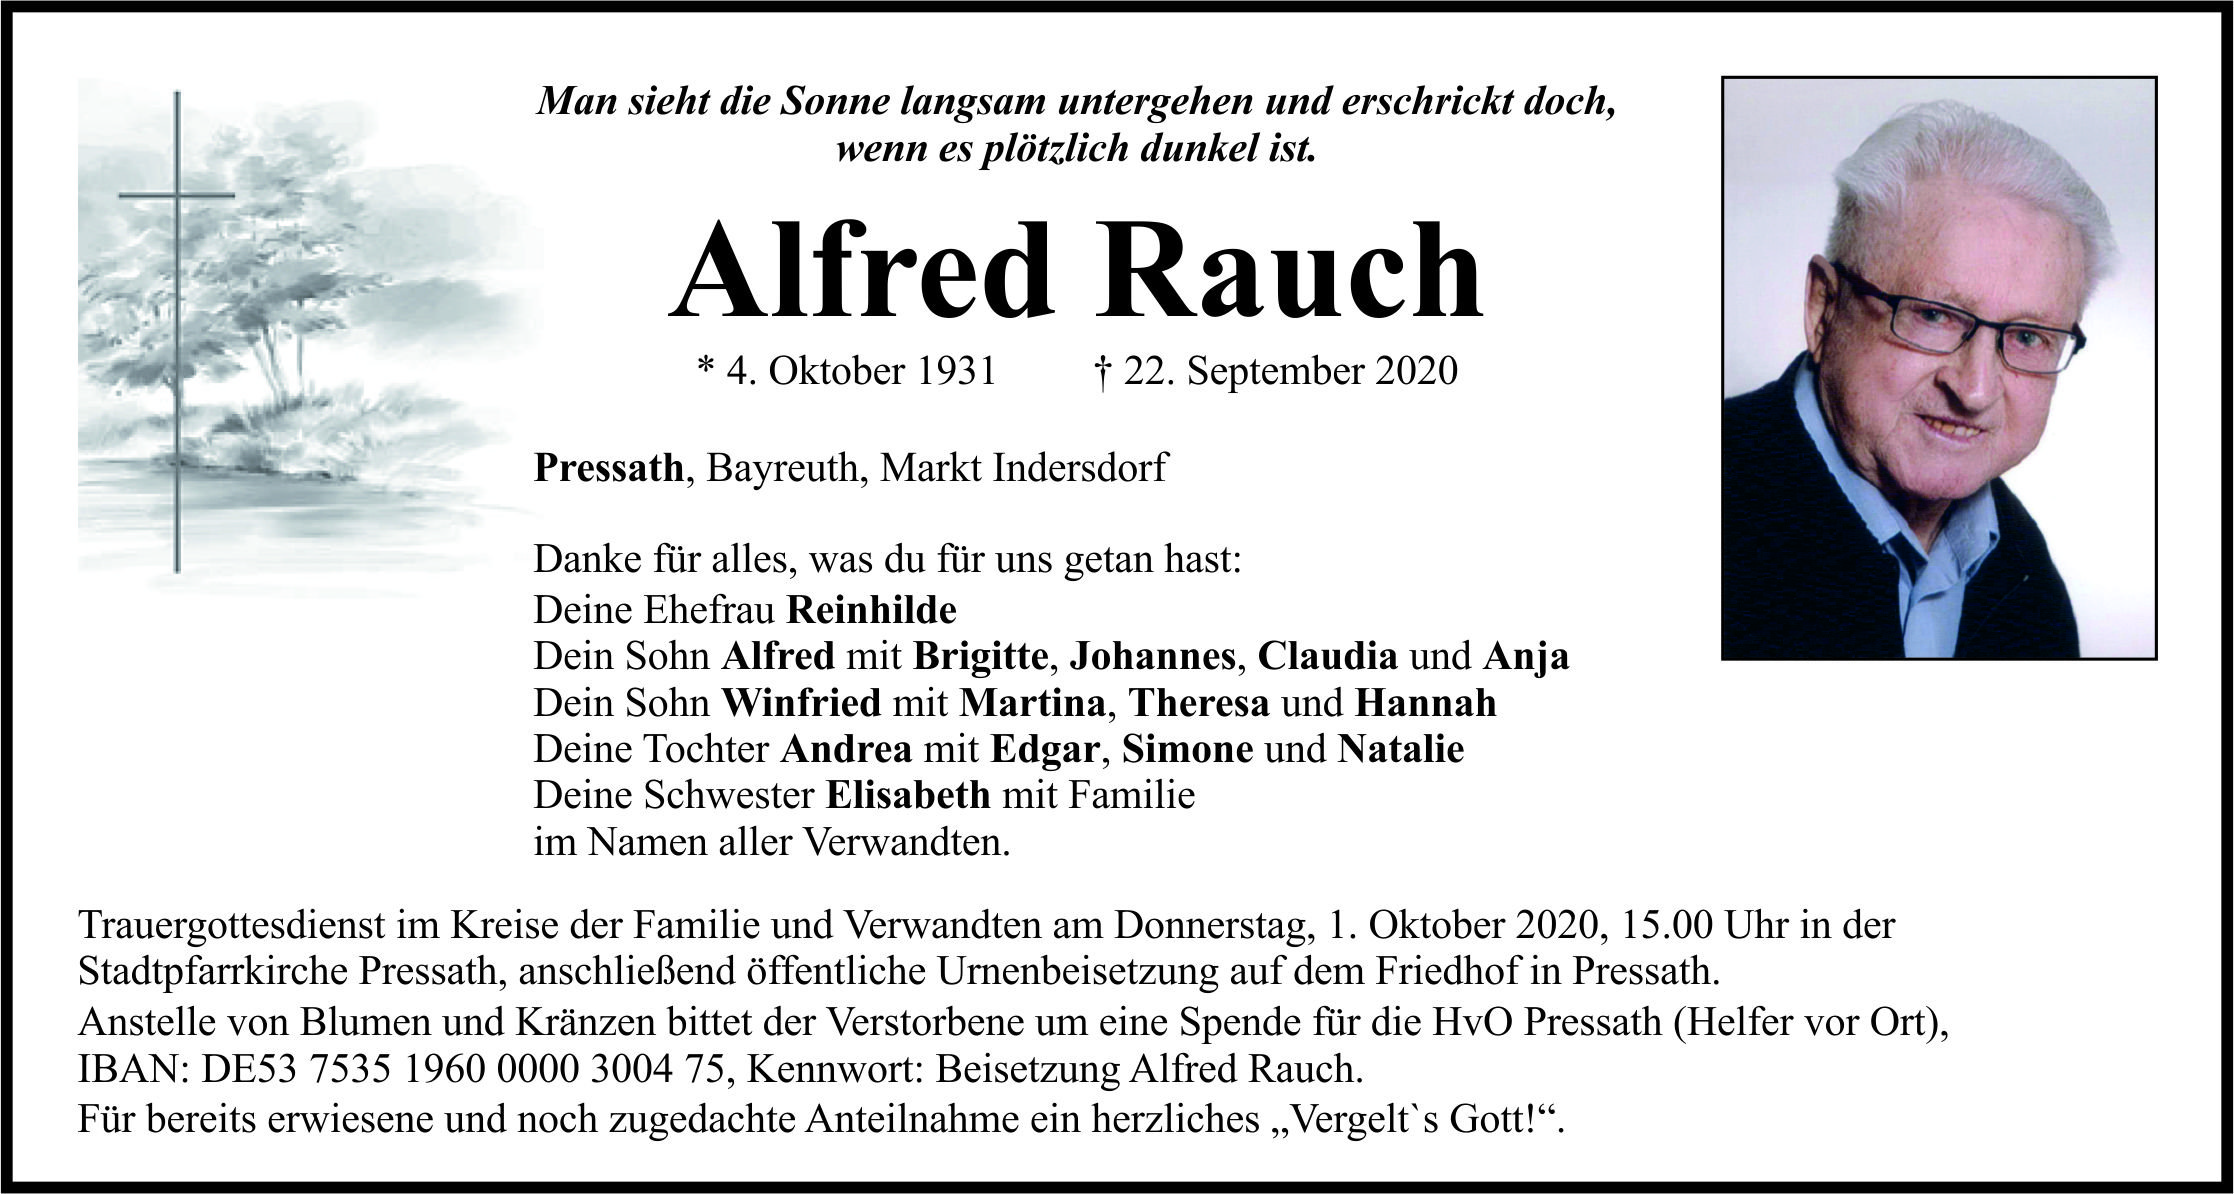 Traueranzeige Alfred Rauch, Pressath